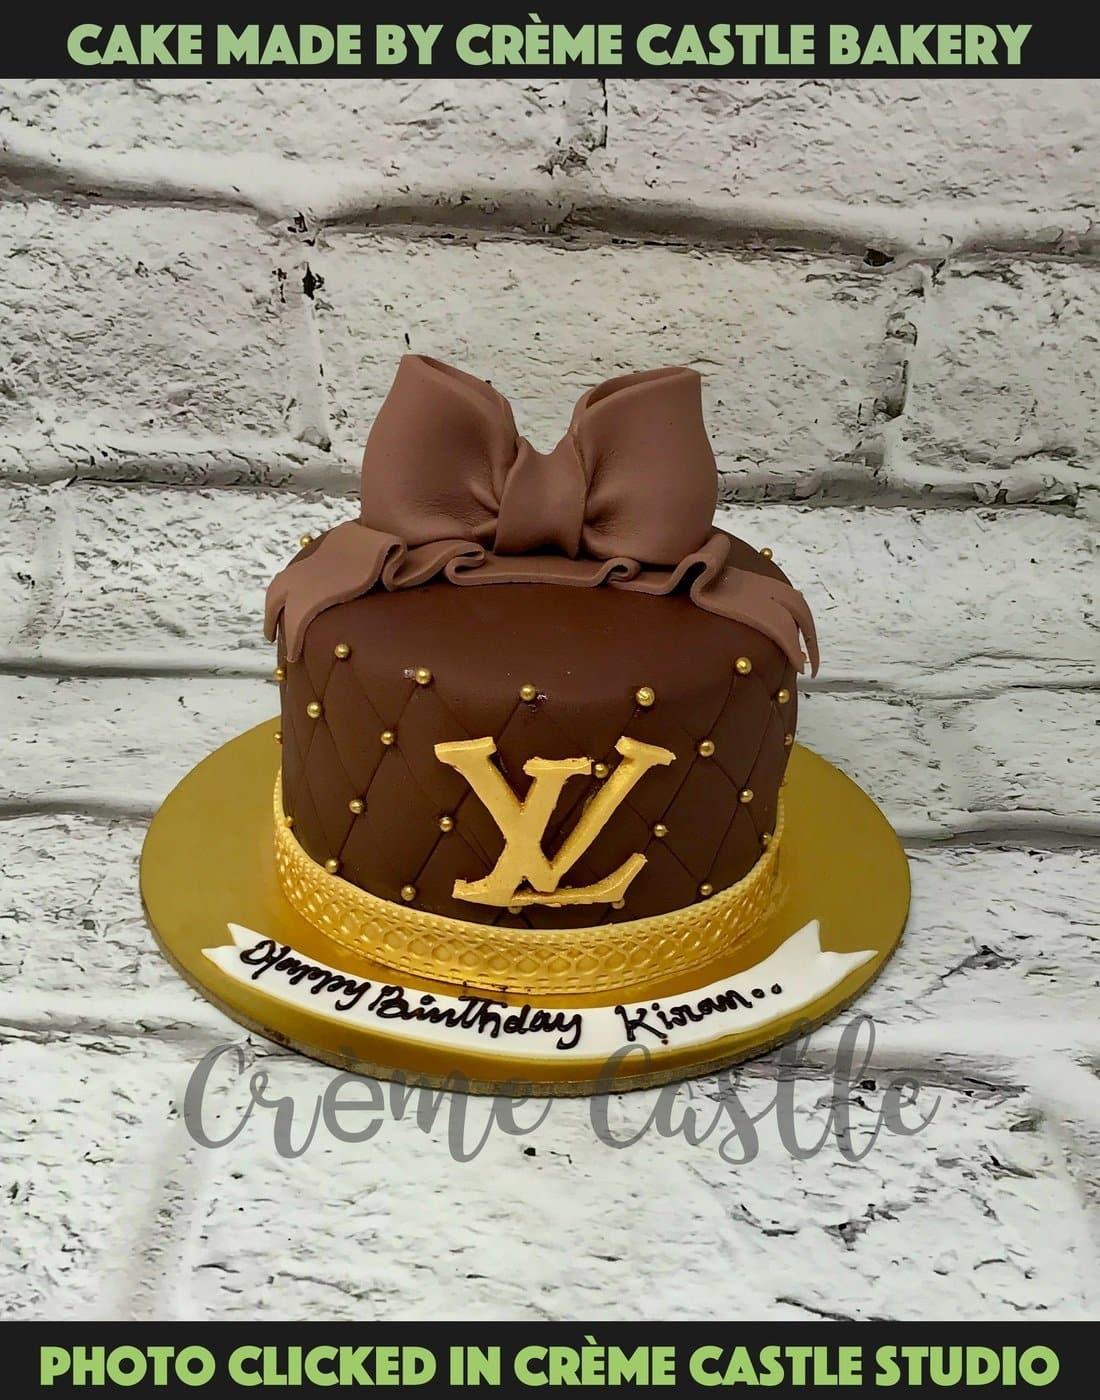 Louis Vuitton Orange Lego Birthday Cake on Garmentory